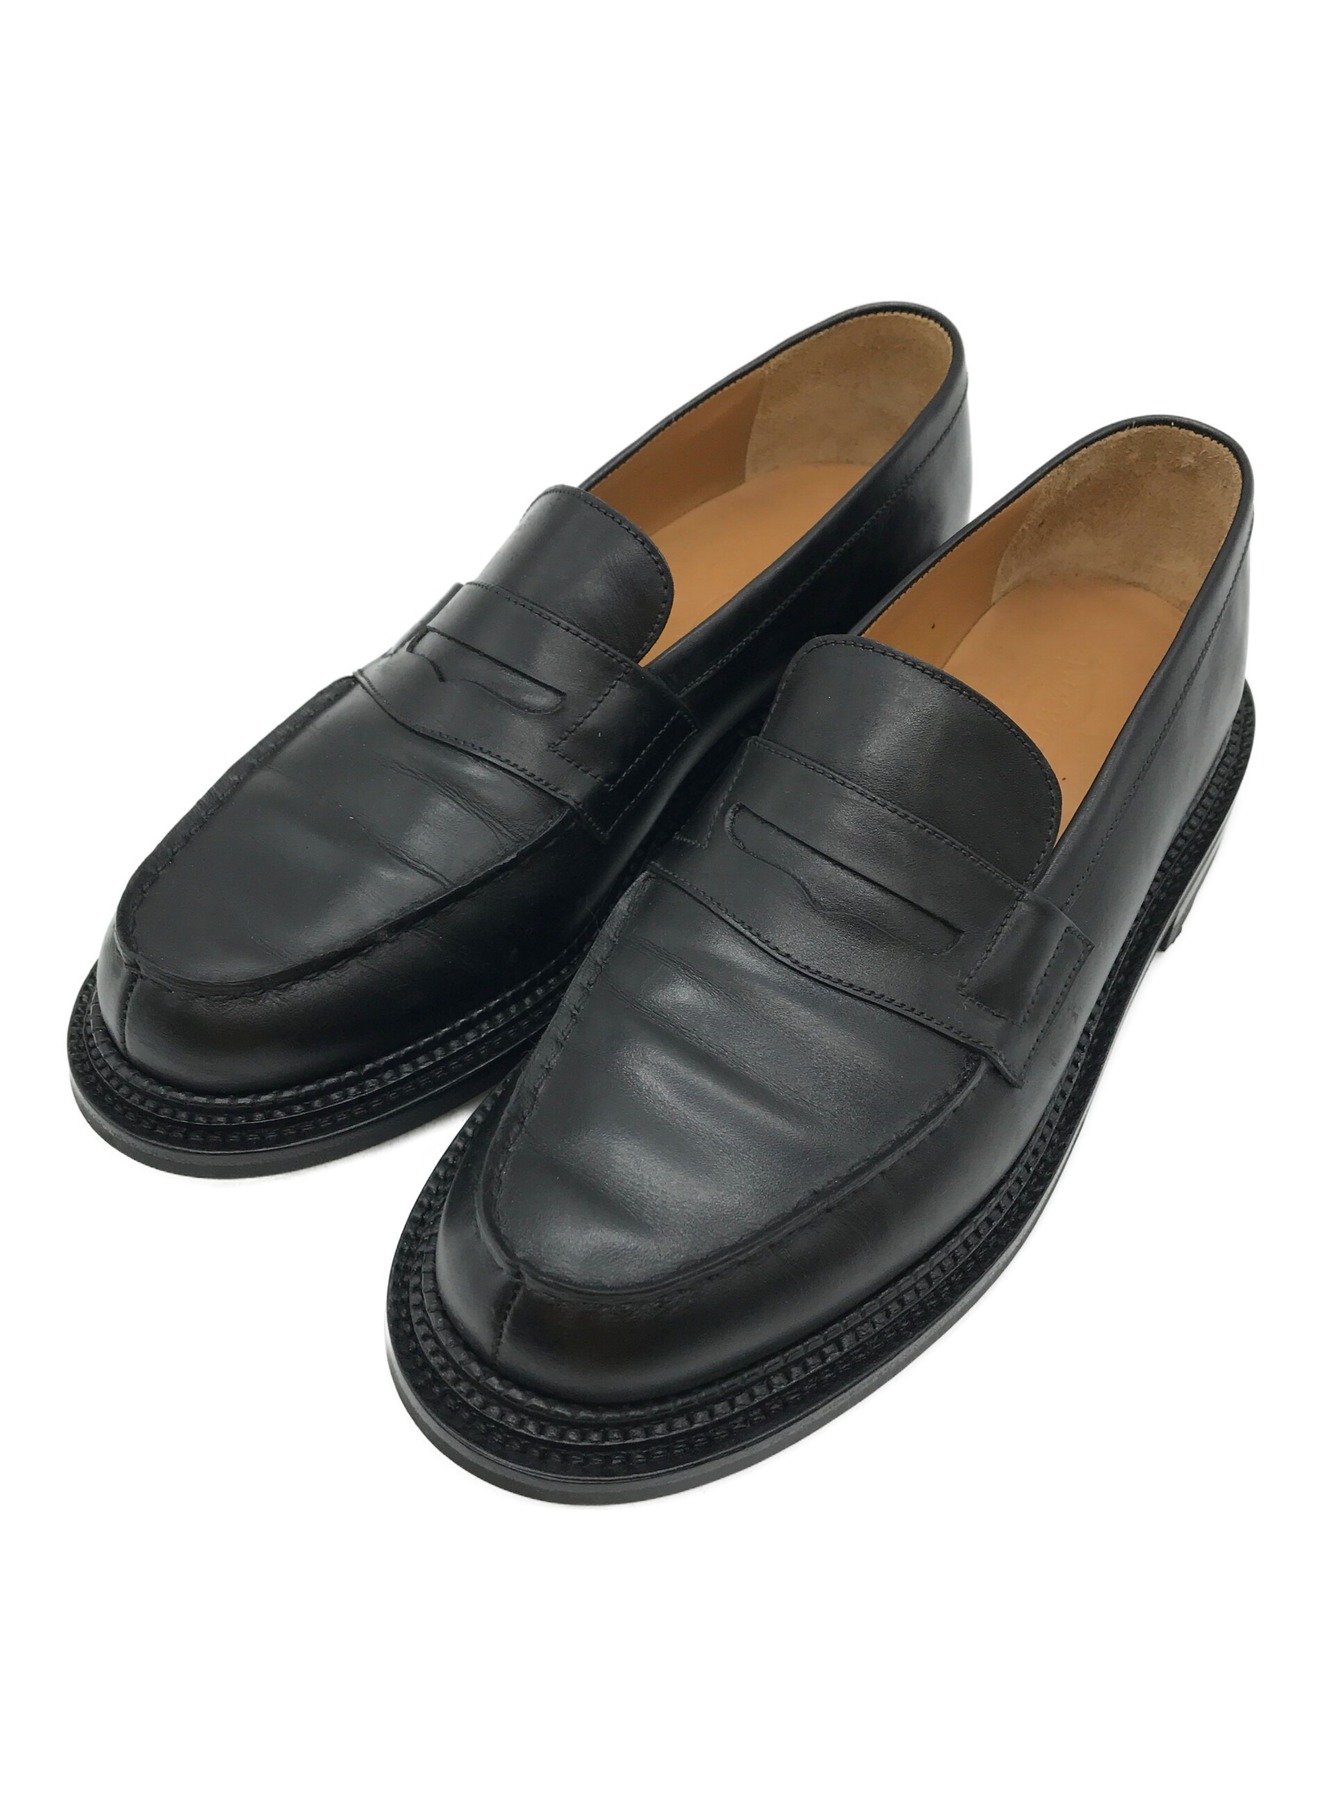 J.M.WESTON (ジェイエムウエストン) Triple sole loafer #385 ブラック サイズ:6/C